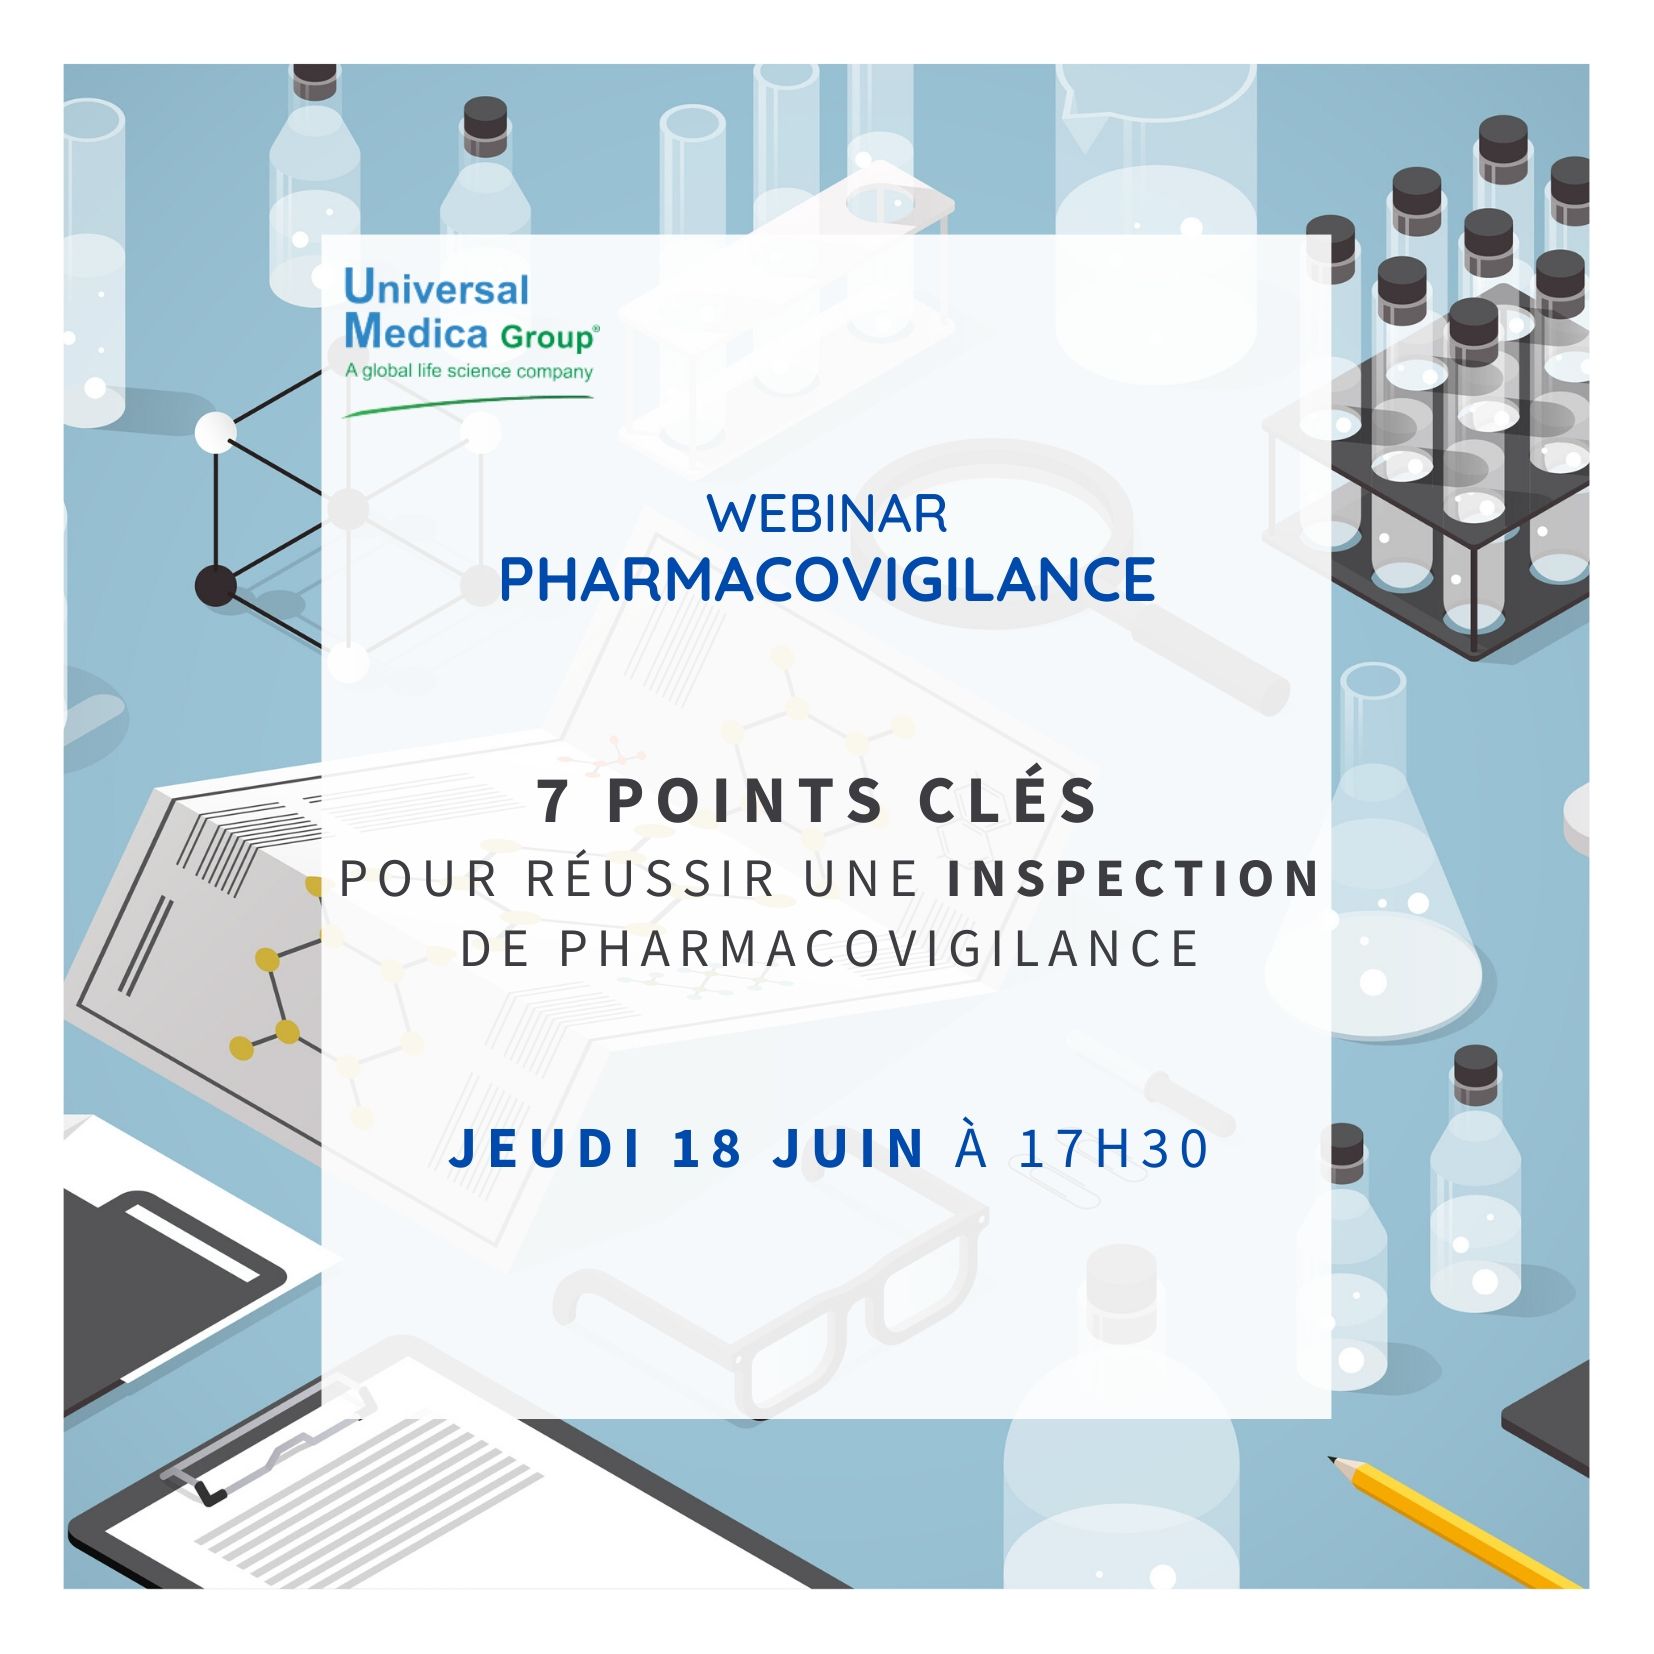 Webinar Pharmacovigilance - 7 points clés pour réussir une inspection de pharmacovigilance - Jeudi 18 juin à 17h30